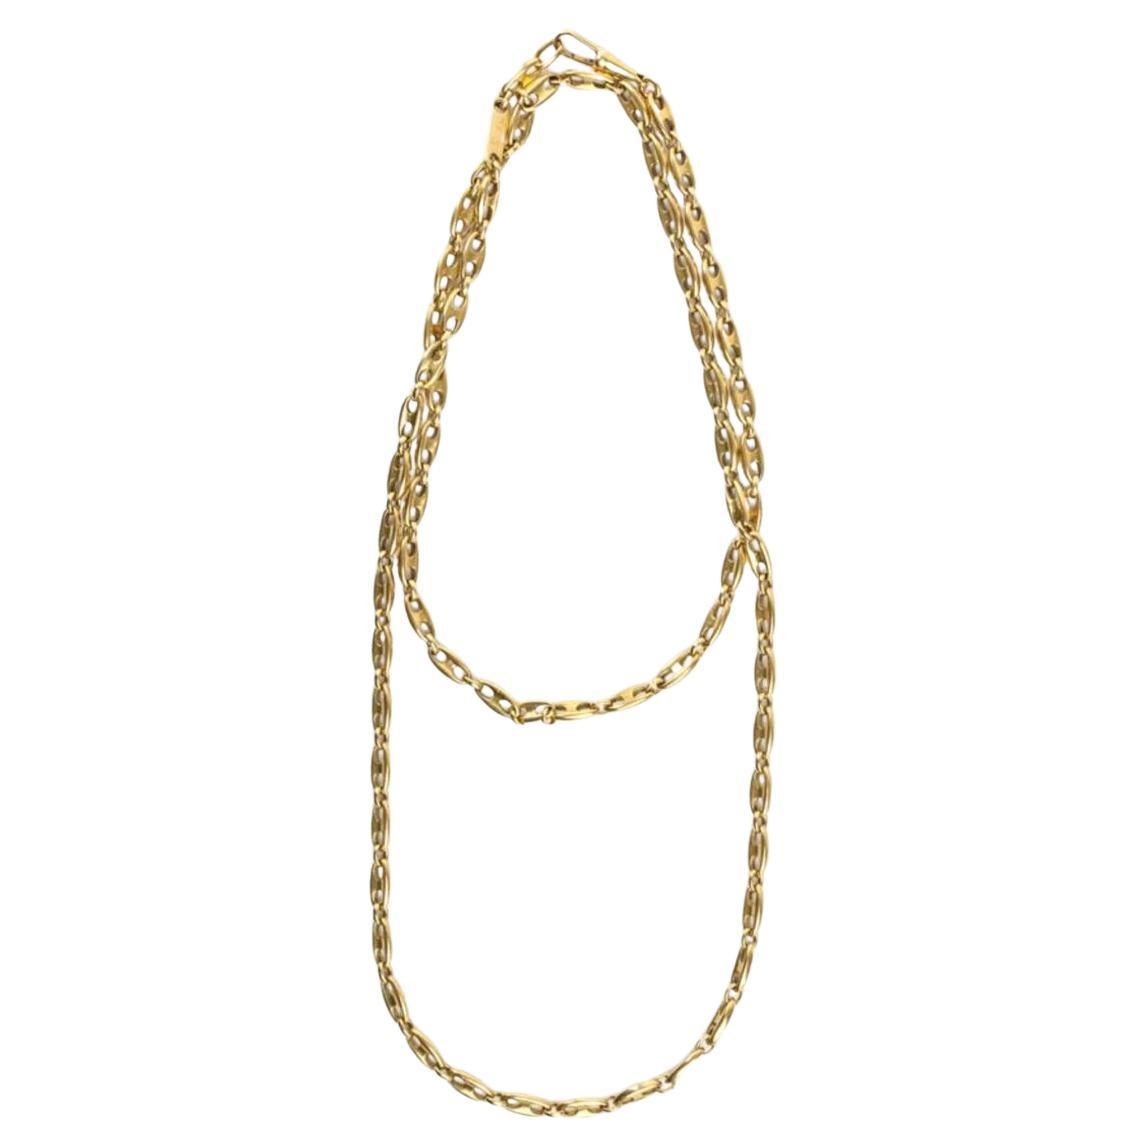 POMELLATO: Langes Halsband aus 18 Karat Gold mit Seemannsstrick